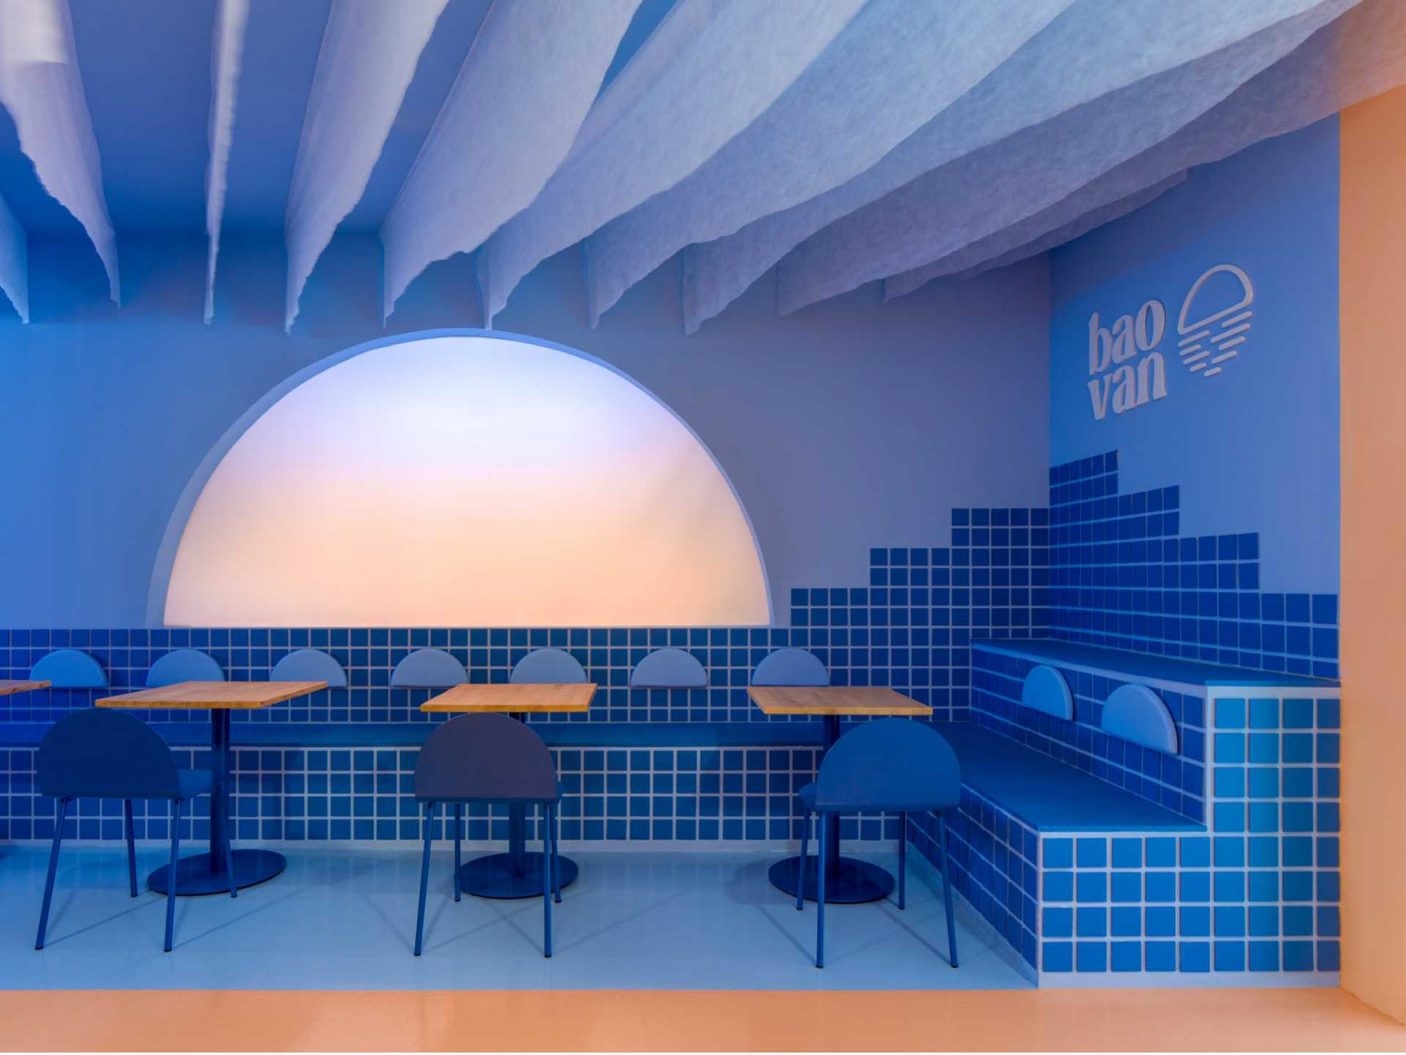 El diseño interior de este restaurante se inspiró en una puesta de sol en la playa